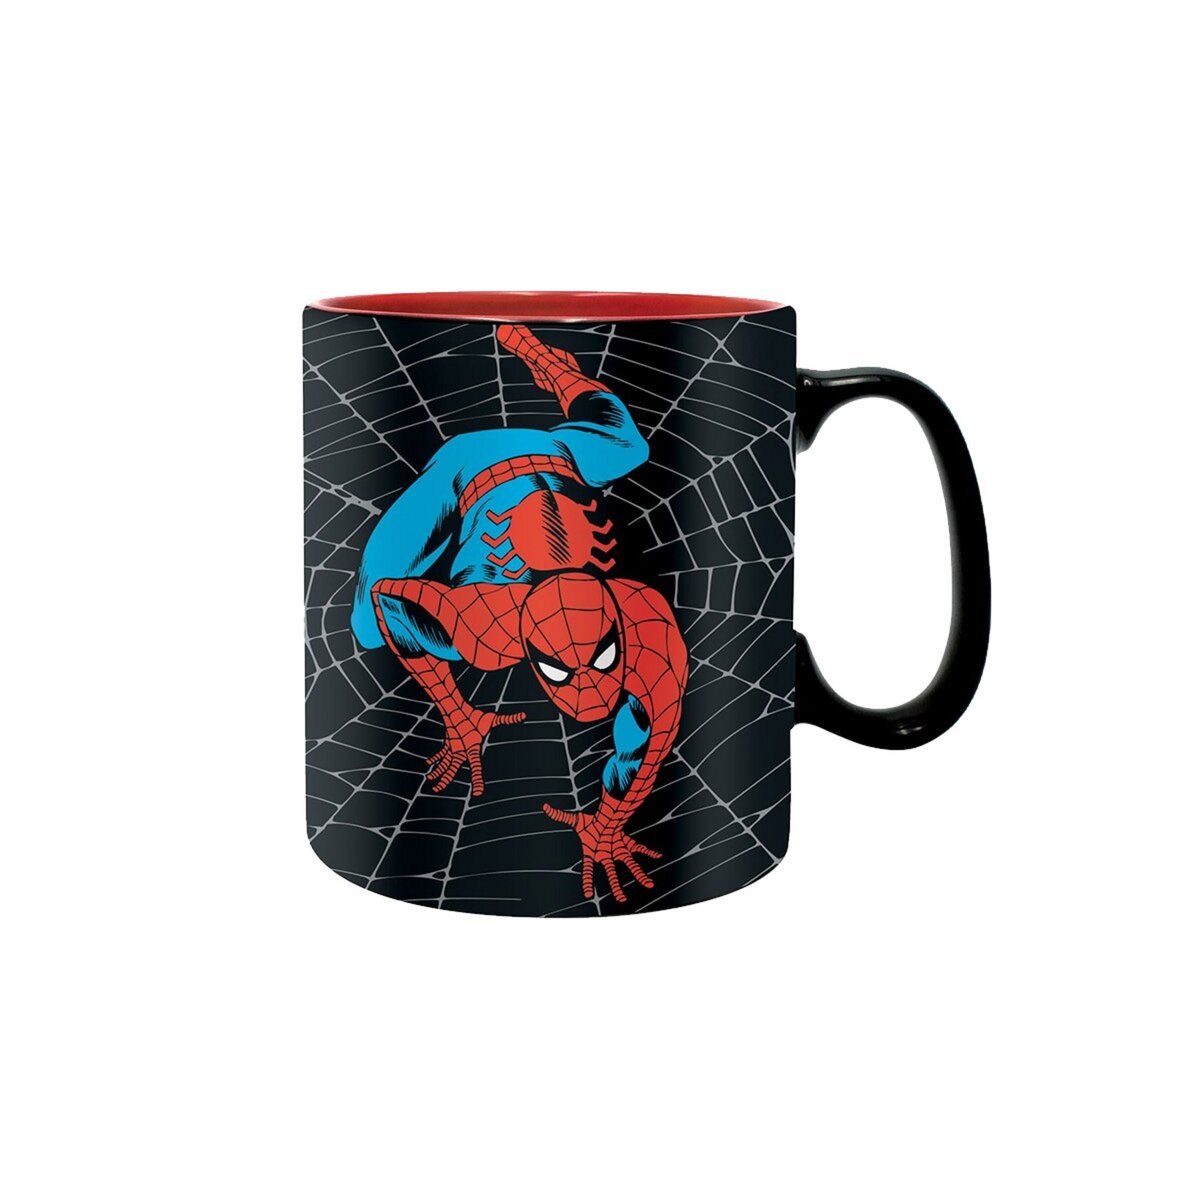 Mug The Amazing Spider-Man - Marvel